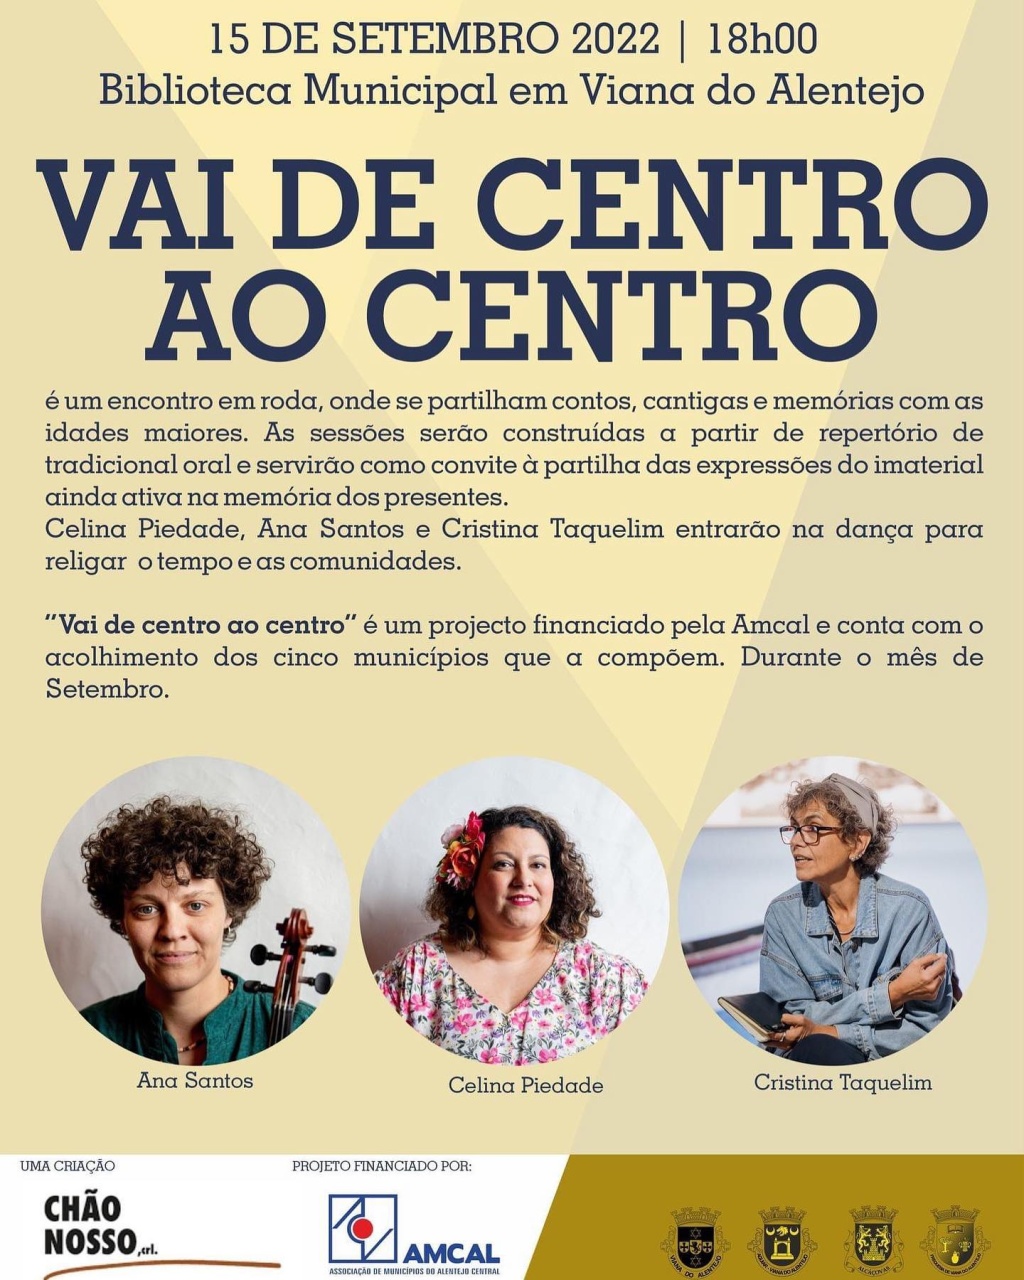 “Vai de Centro ao Centro” na Biblioteca de Viana do Alentejo!